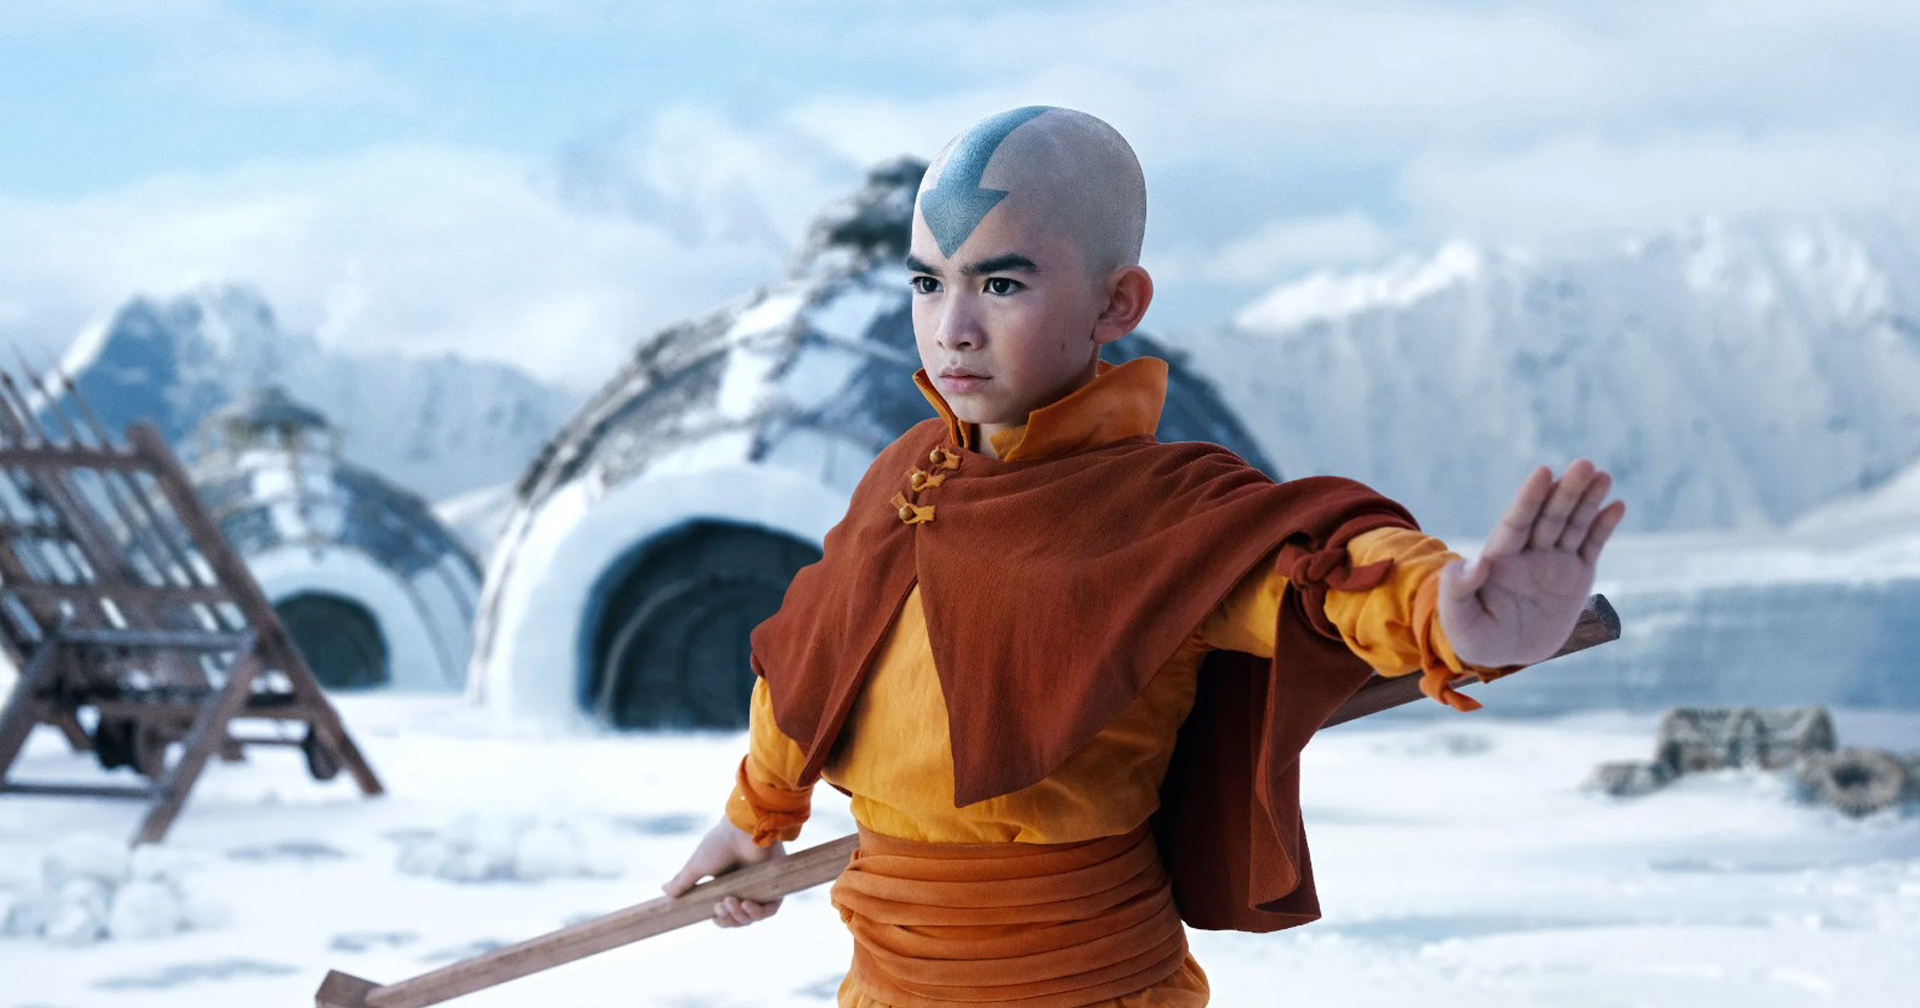 Netflix ยืนยัน! ประกาศสร้างซีรีส์ ‘Avatar: The Last Airbender’ ซีซัน 2 และ 3 อย่างเป็นทางการ